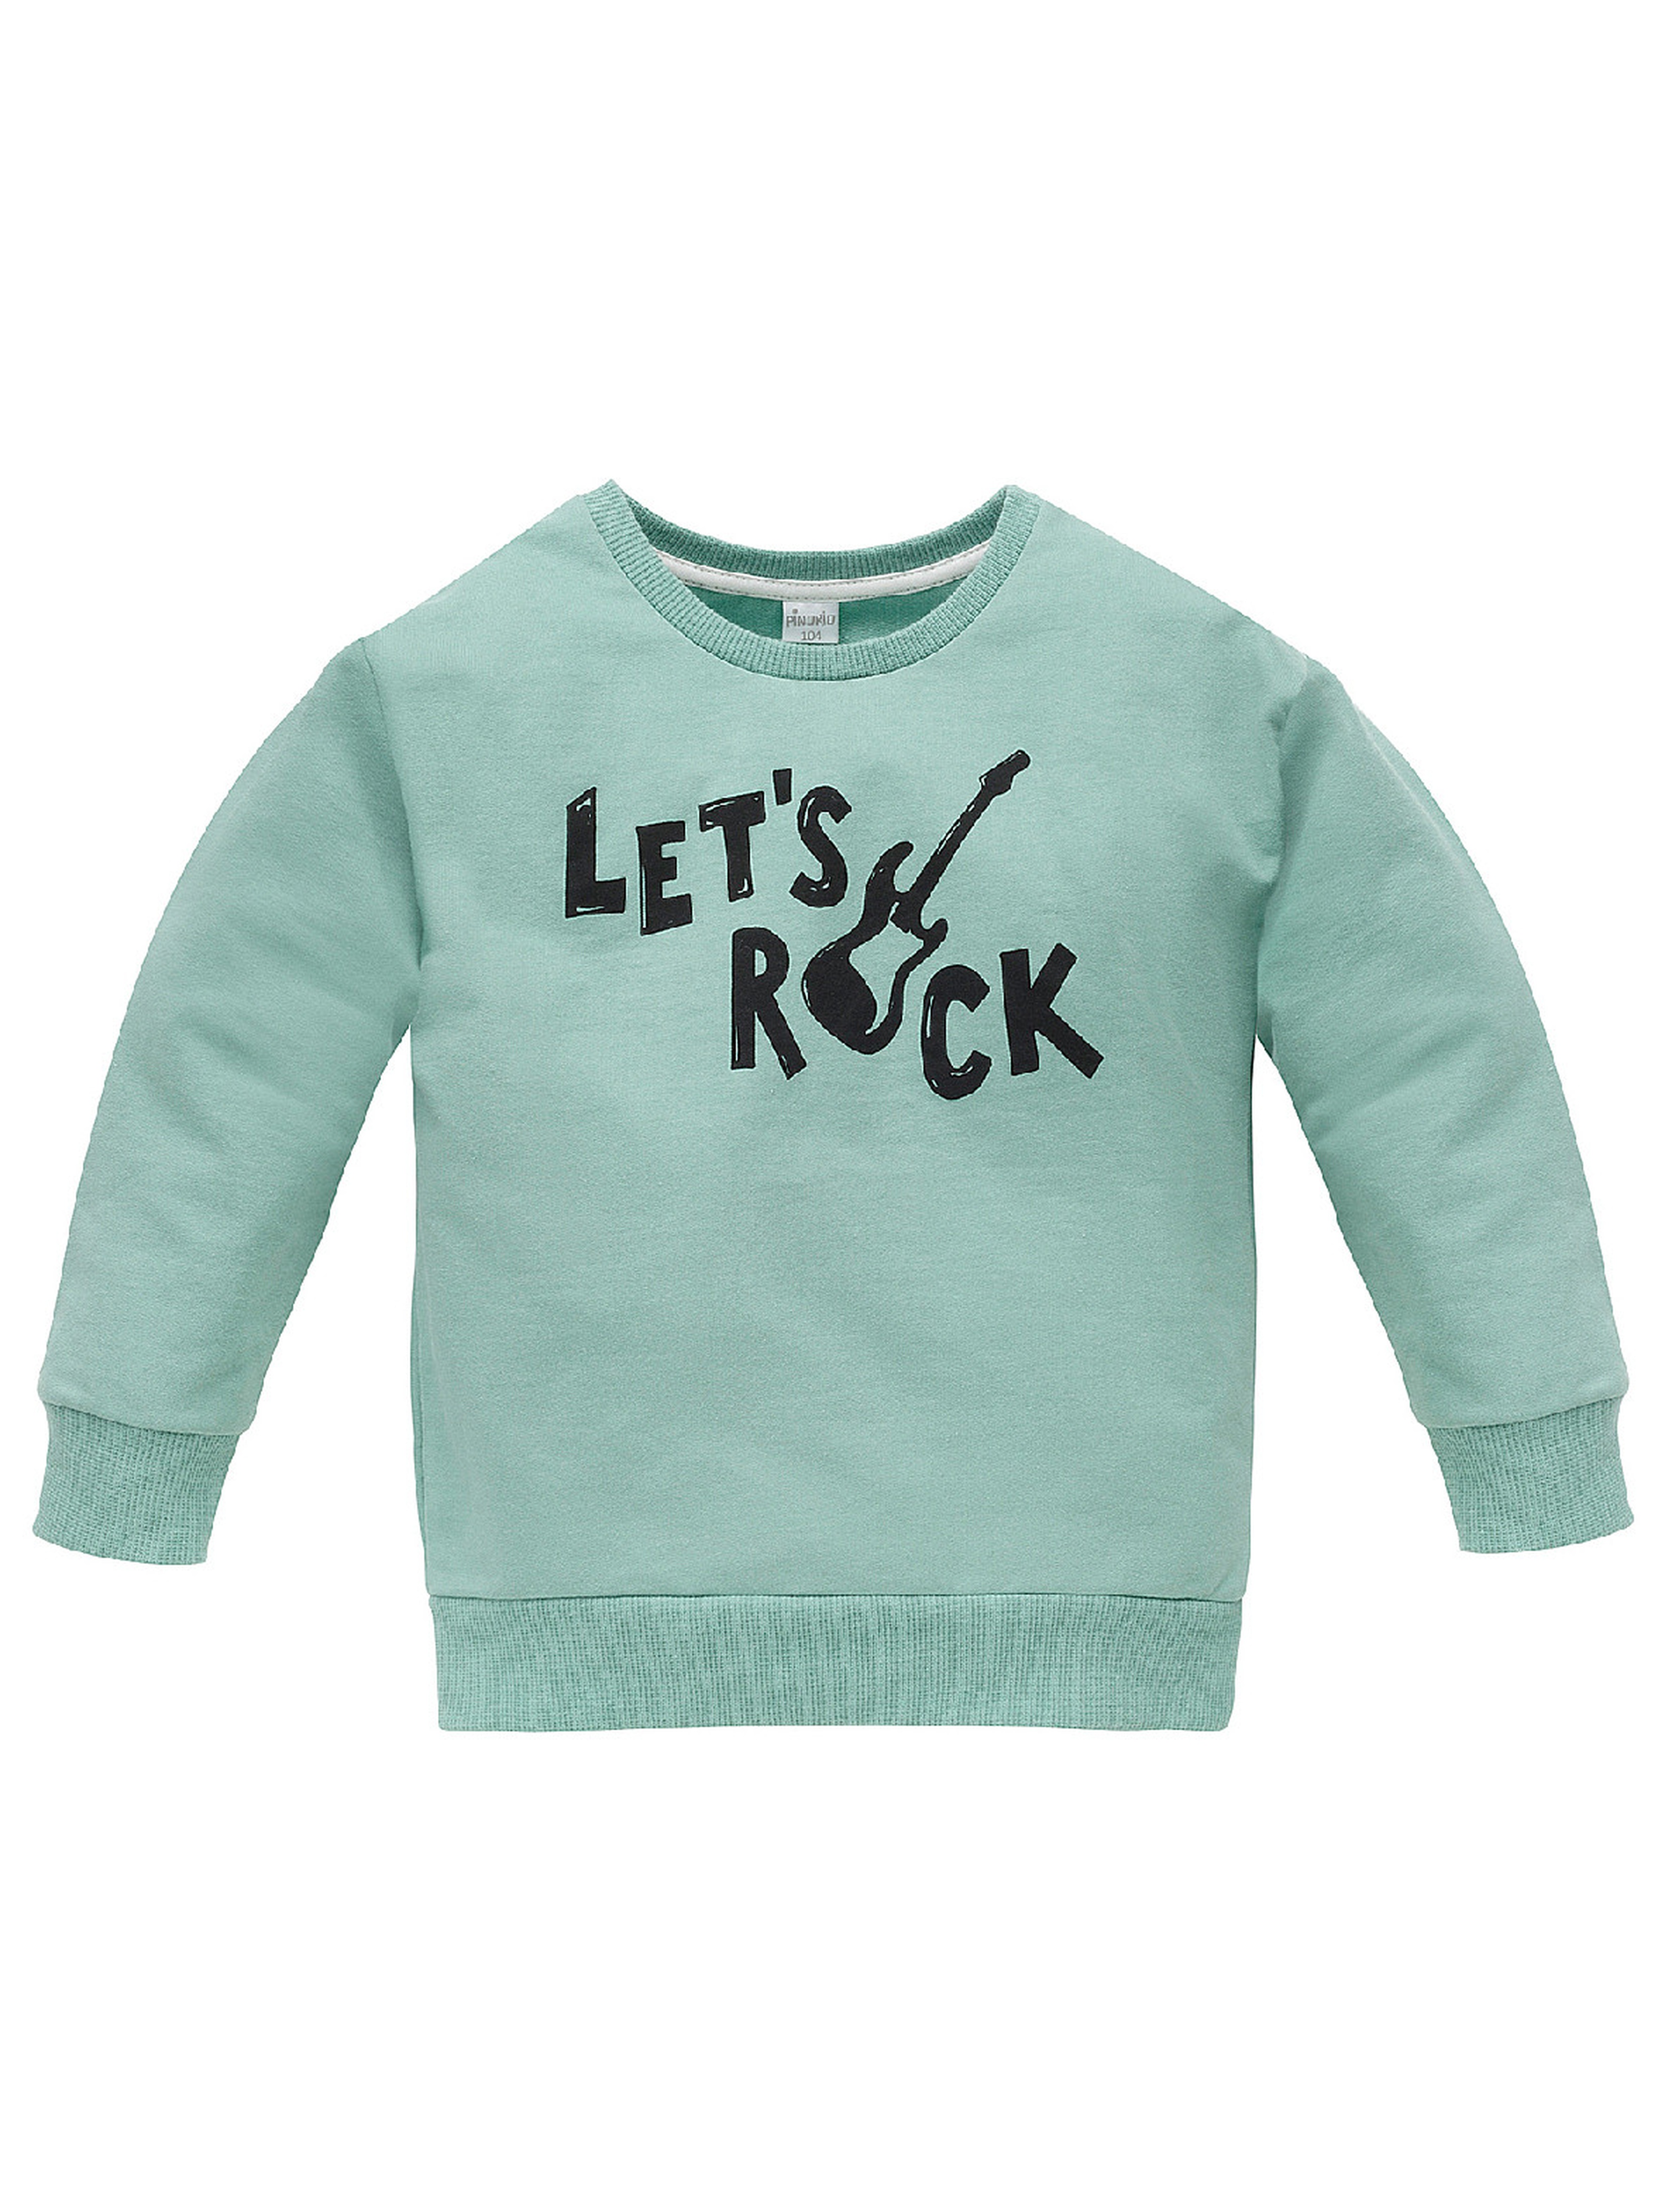 Bluza dla niemowlaka z bawełny Let's rock zielona